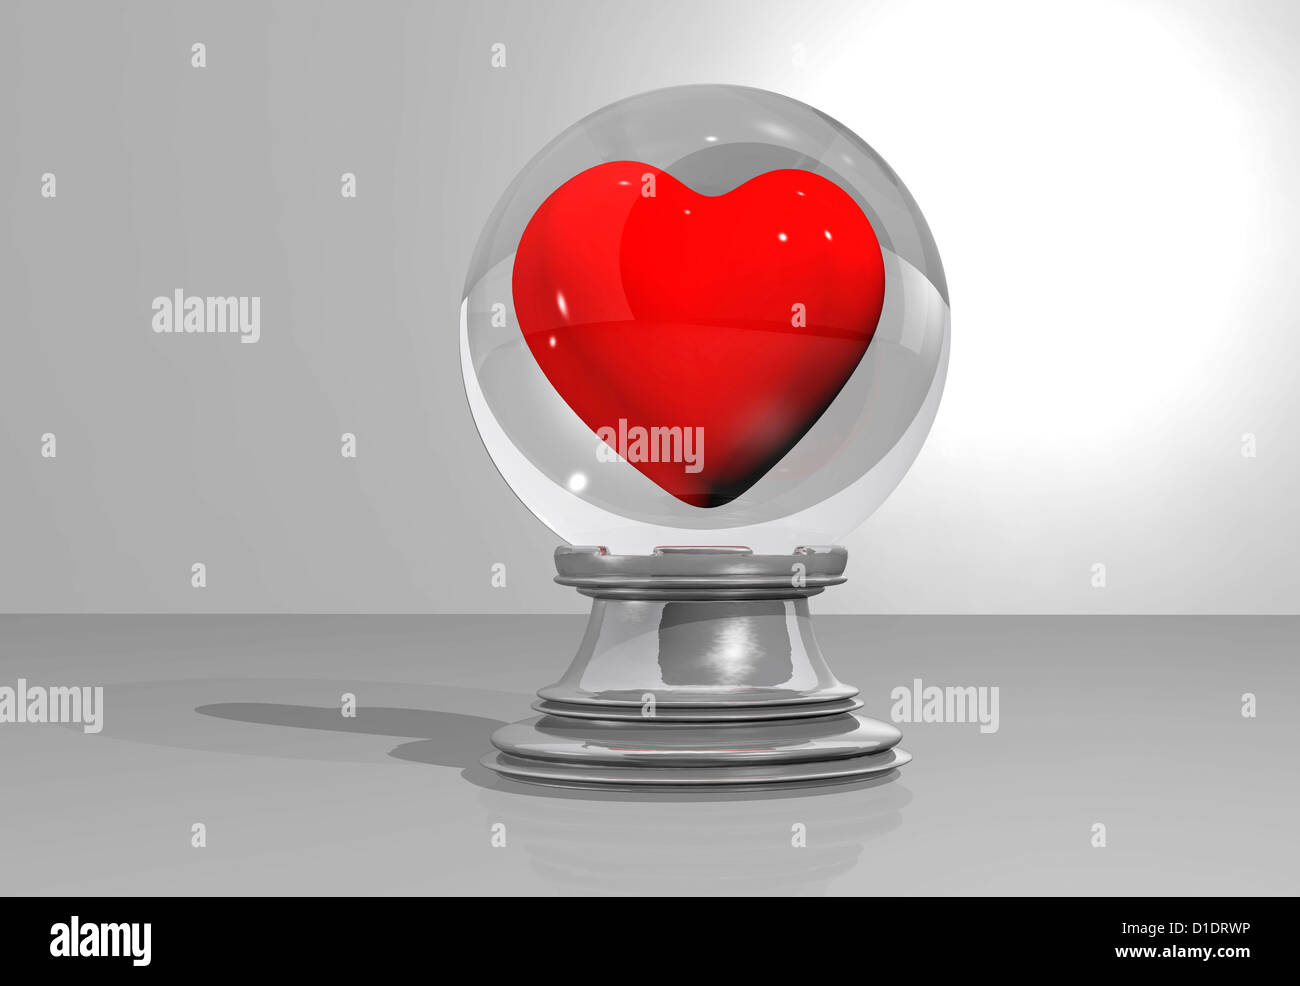 Boule de cristal avec un coeur à l'intérieur Banque D'Images